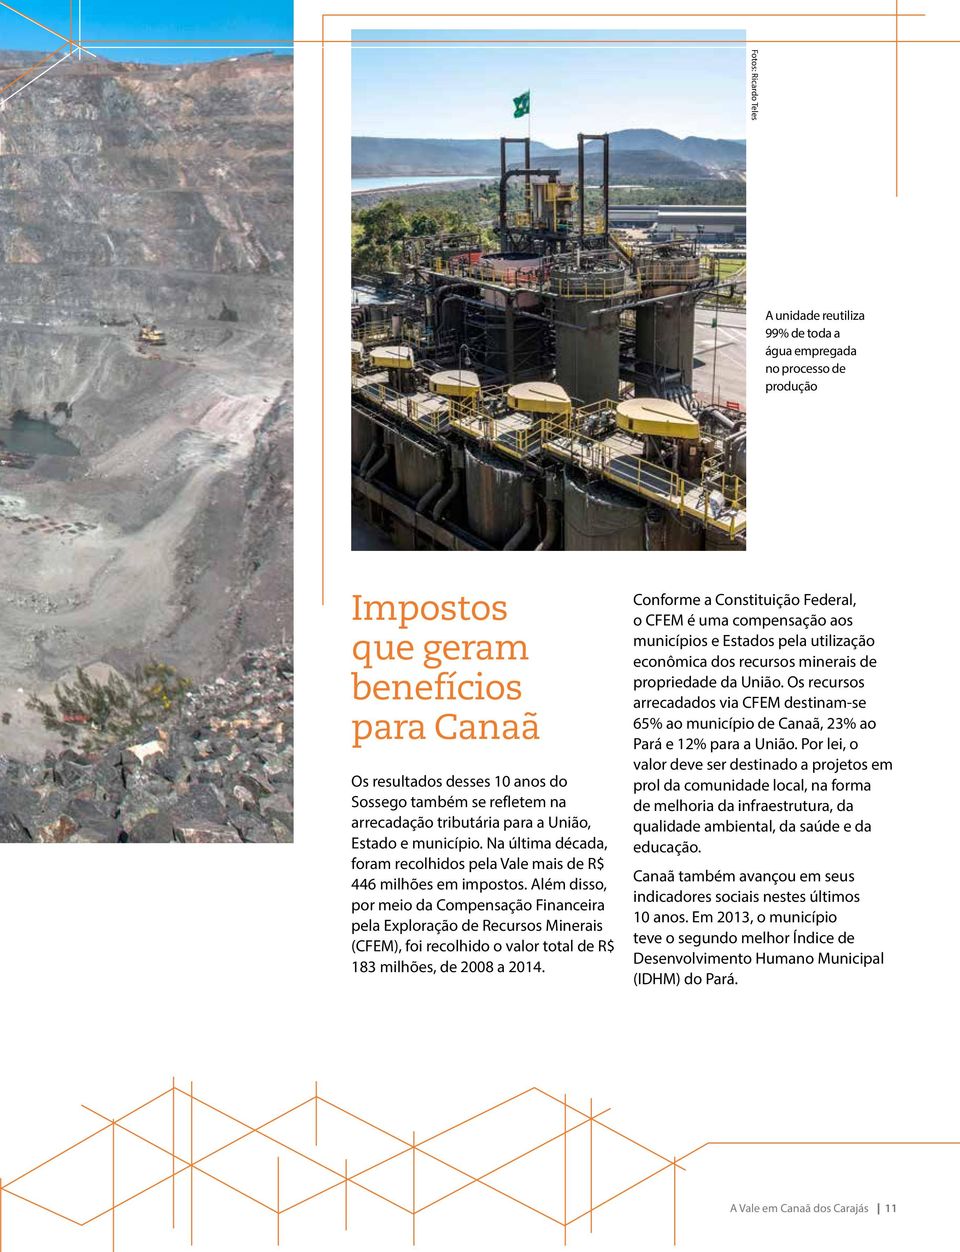 Além disso, por meio da Compensação Financeira pela Exploração de Recursos Minerais (CFEM), foi recolhido o valor total de R$ 183 milhões, de 2008 a 2014.